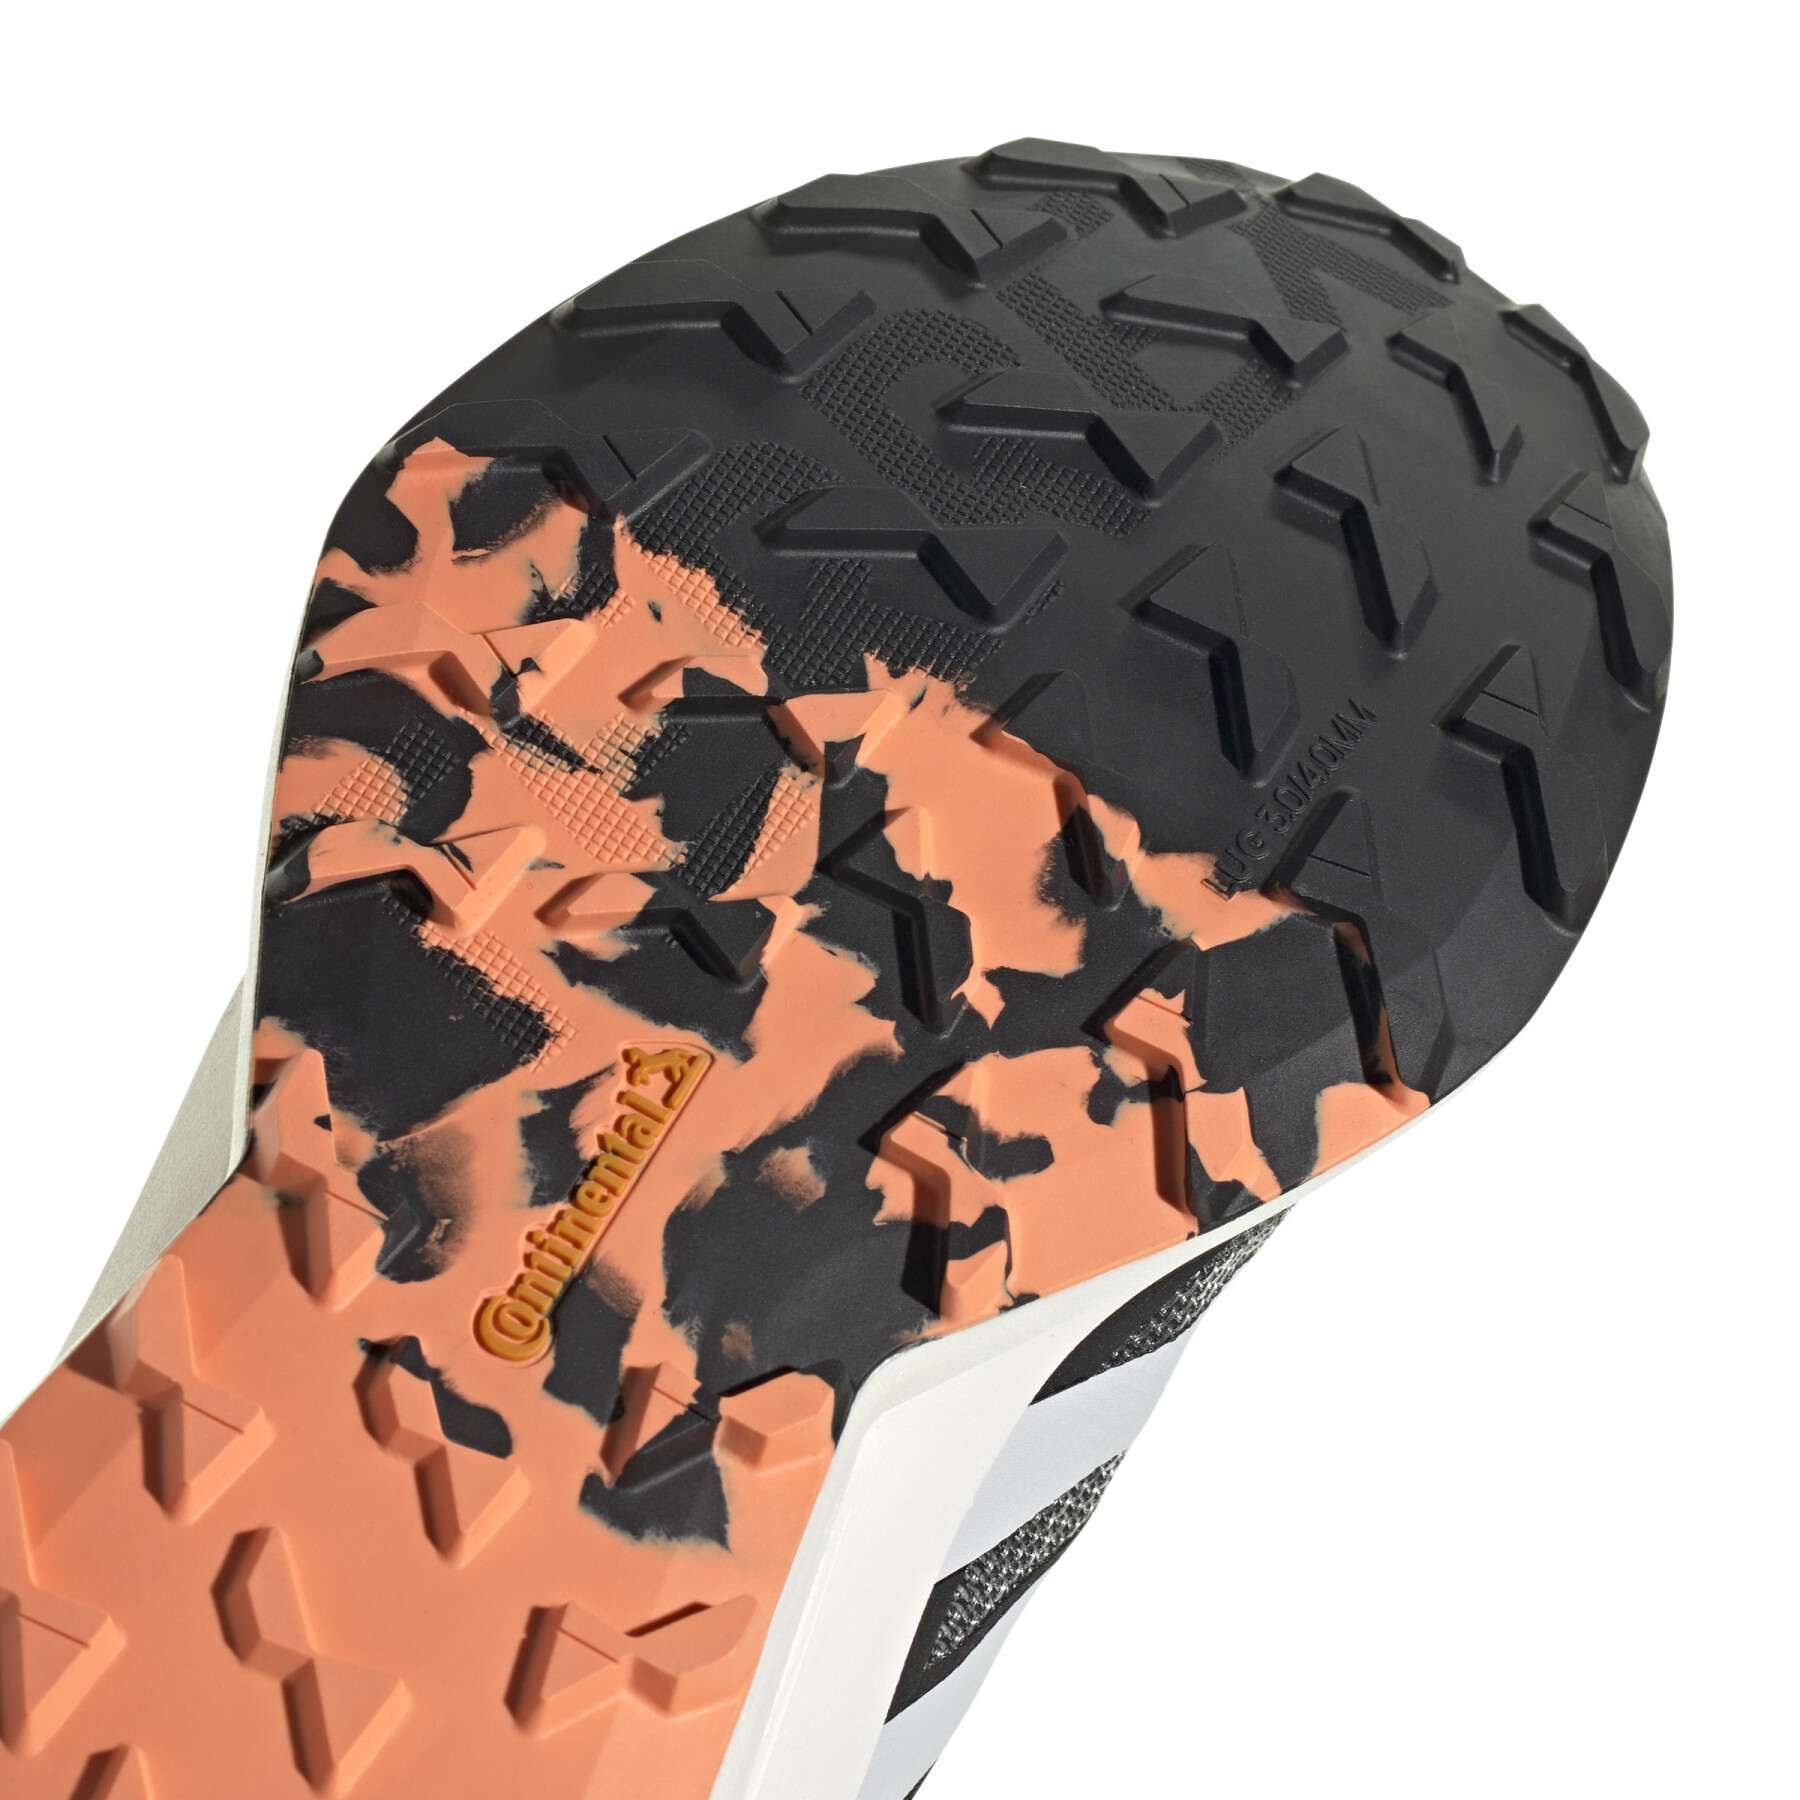 Trailrunning-Schuhe für Frauen adidas Terrex Agravic Speed